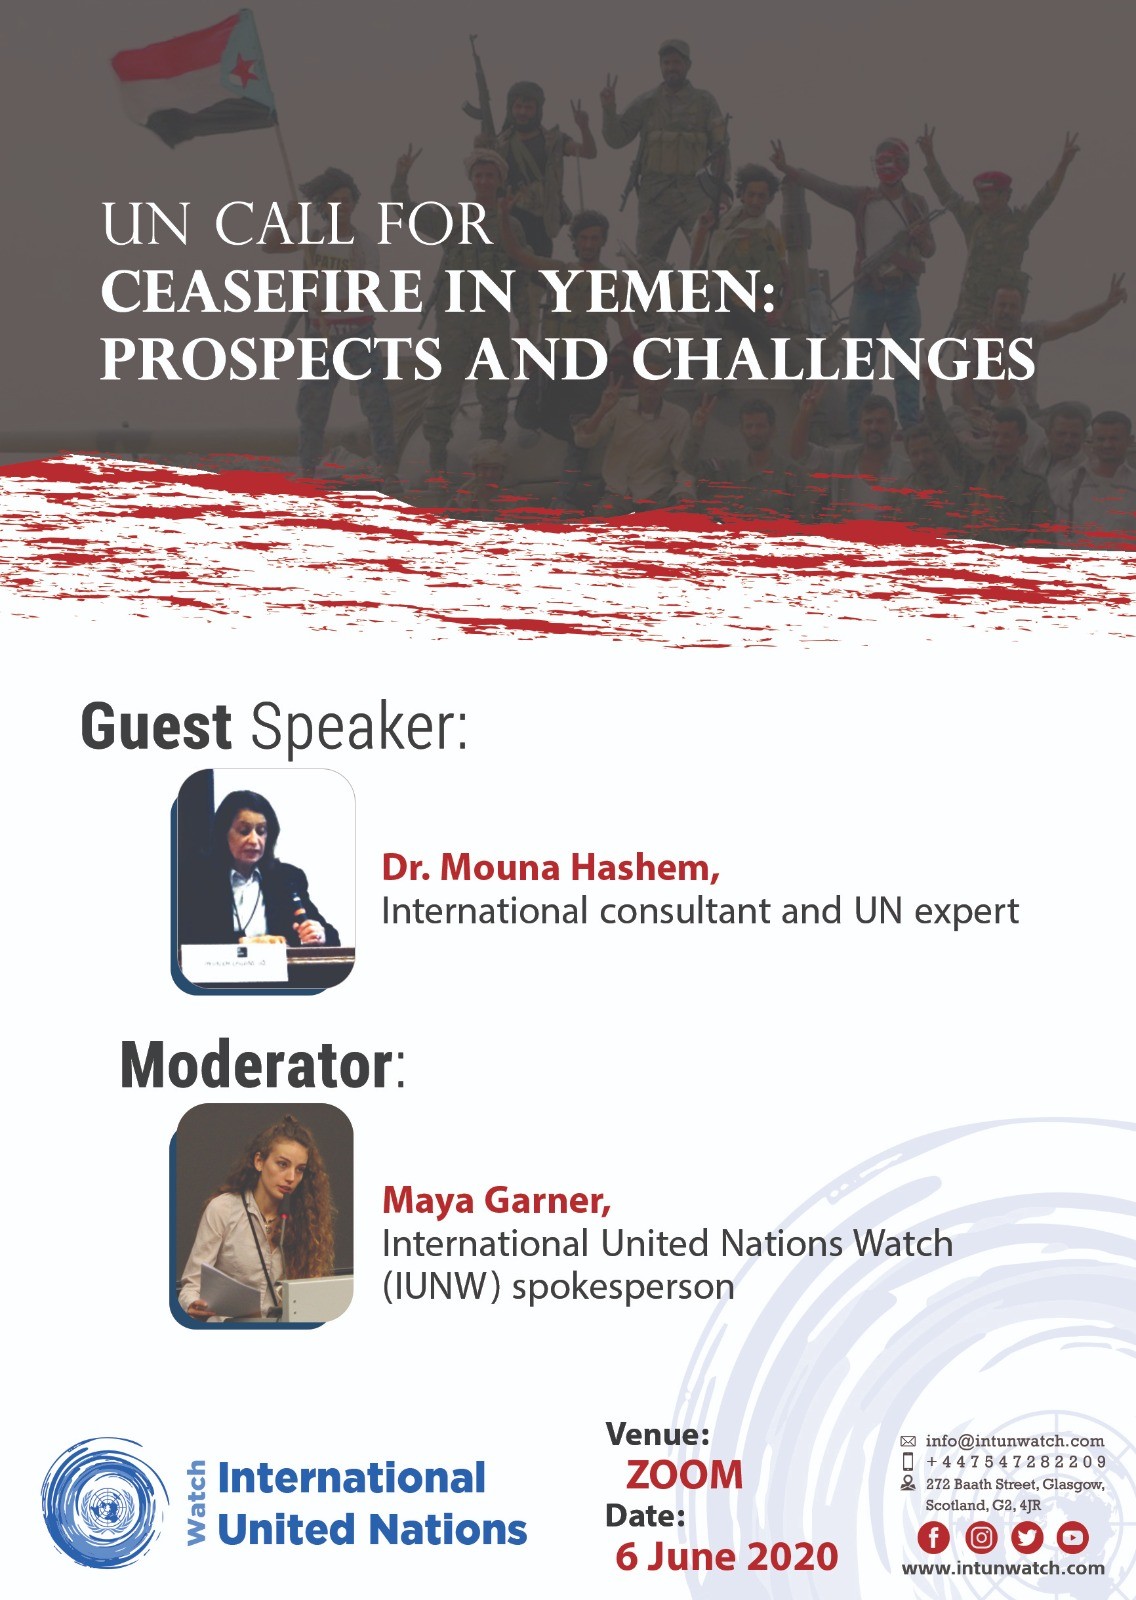  Interview (2): UN Call for Ceasefire in Yemen